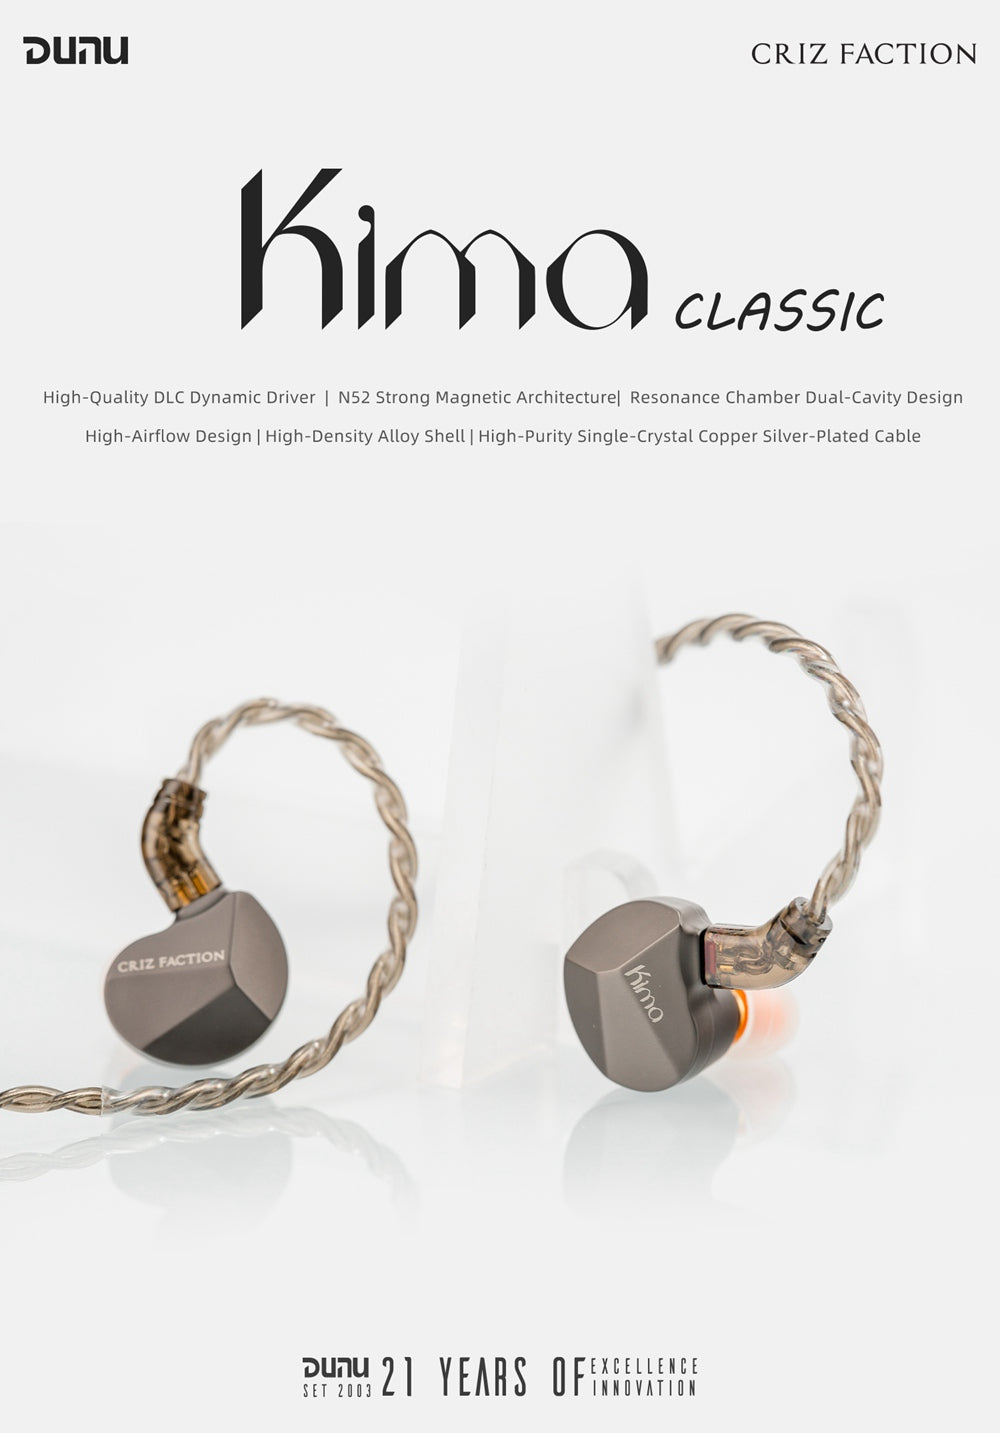 DUNU Kima Classic Dynamic Driver In-ear Headphone